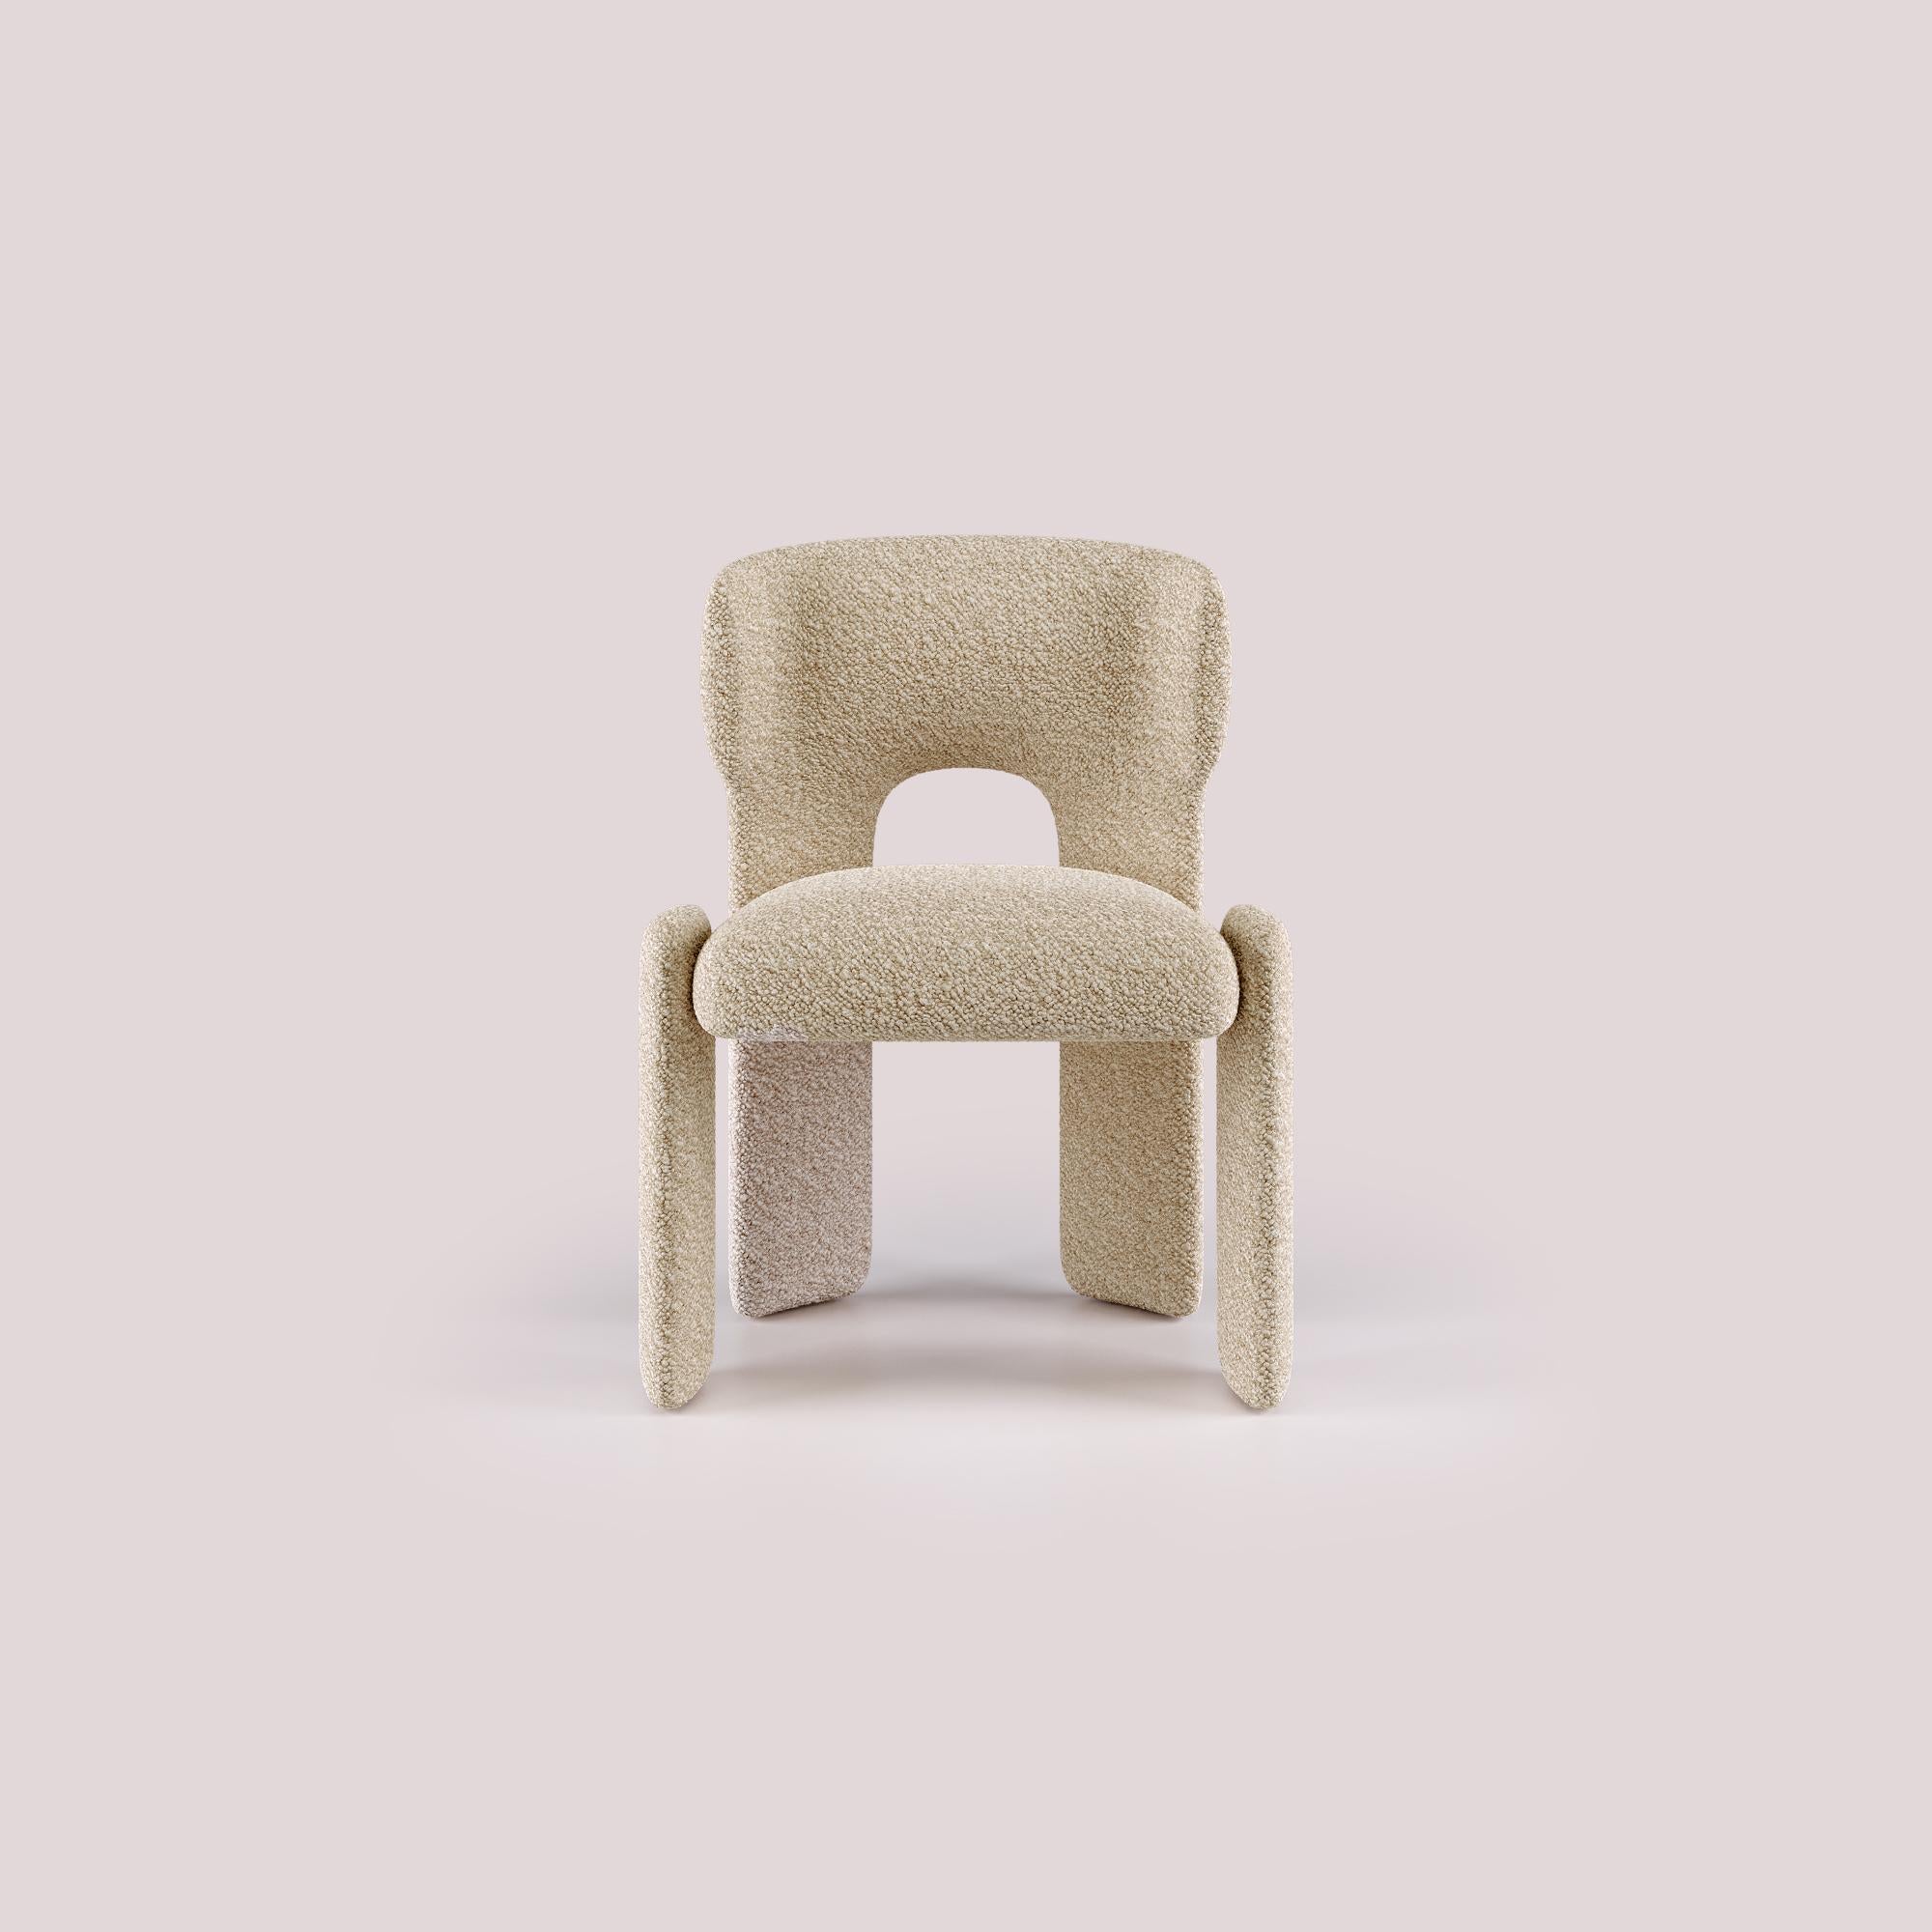 Témoignant d'un nouveau niveau de design moderne, la chaise de salle à manger Bold allie harmonieusement forme et fonction, rehaussant toute expérience culinaire par son élégance raffinée.

Des décennies d'expertise en matière de conception